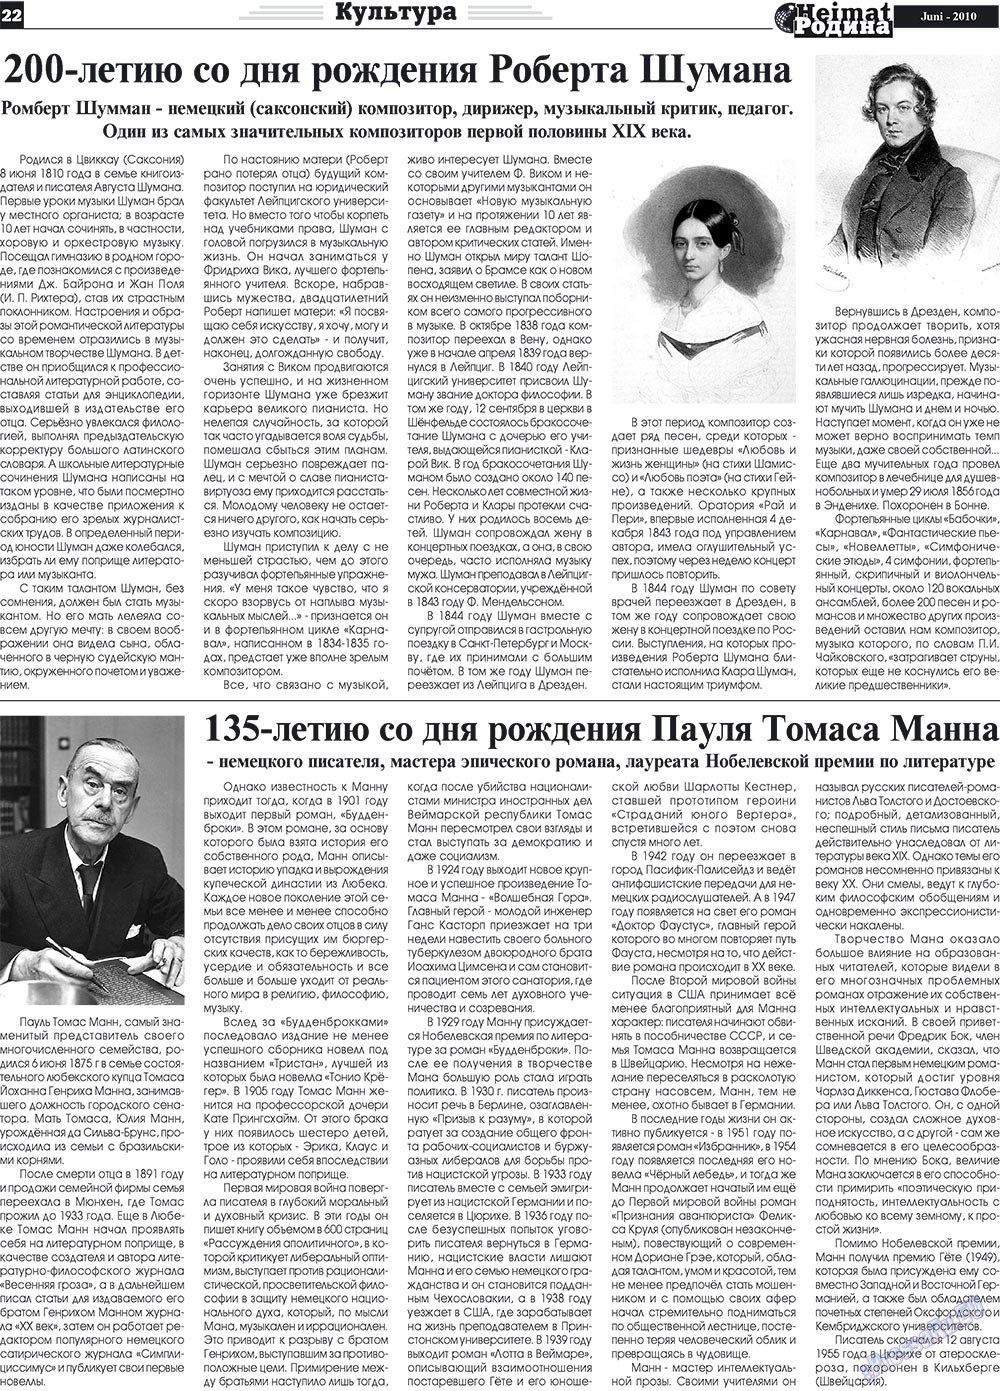 Heimat-Родина (газета). 2010 год, номер 6, стр. 22